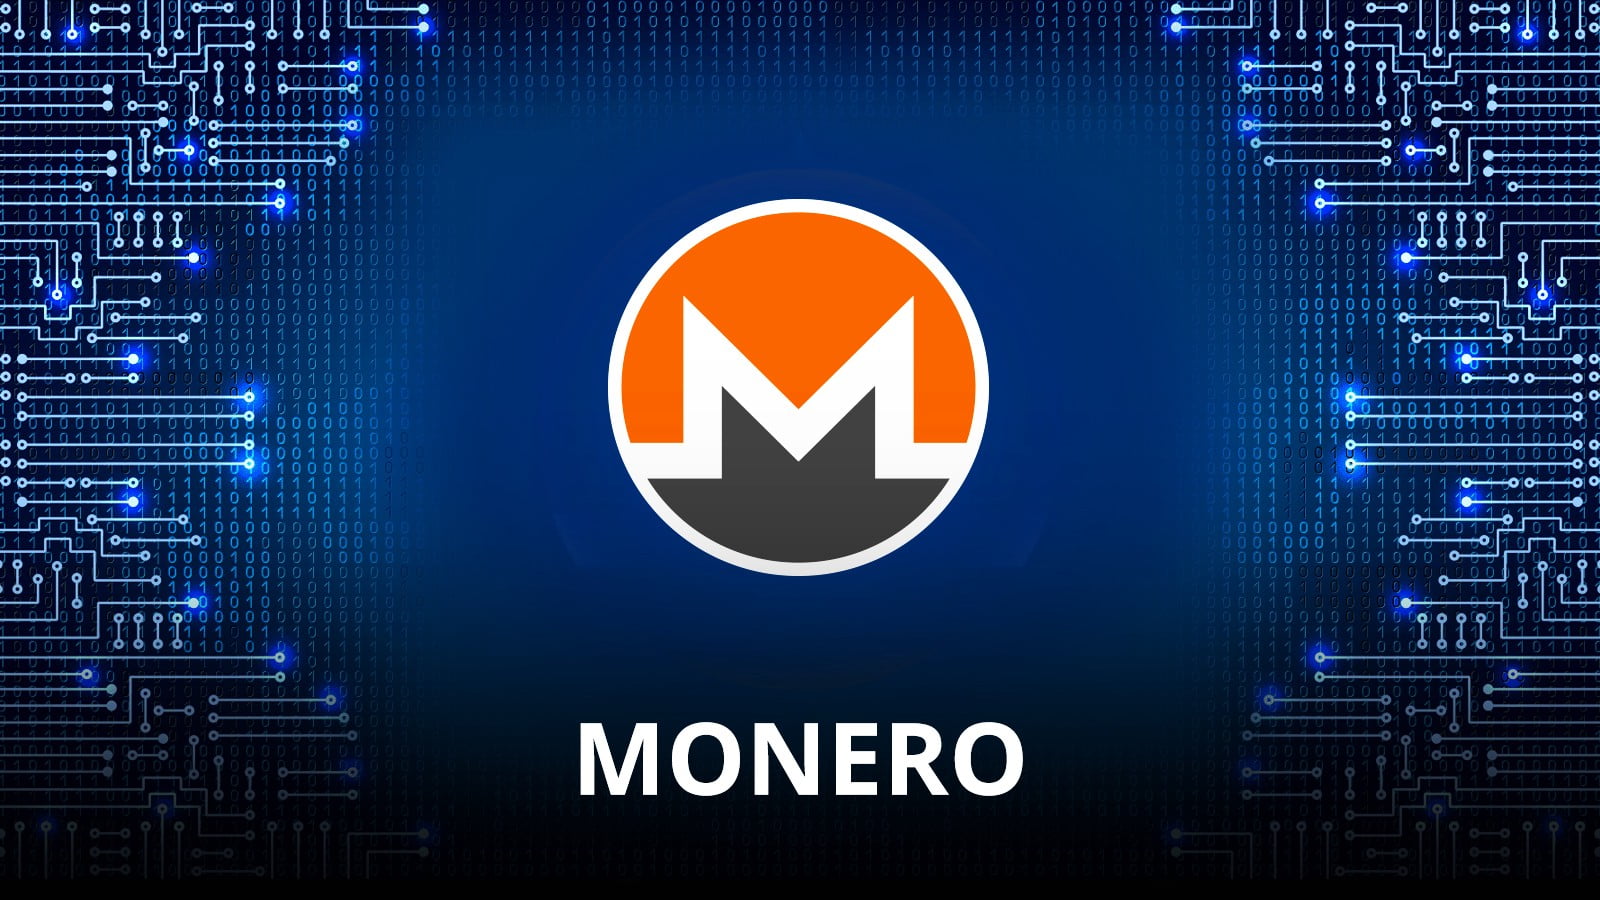 برامج ضارة على موقع مونيرو تمكن من سرقة العملات الرقمية - تقني نت العملات الرقمية